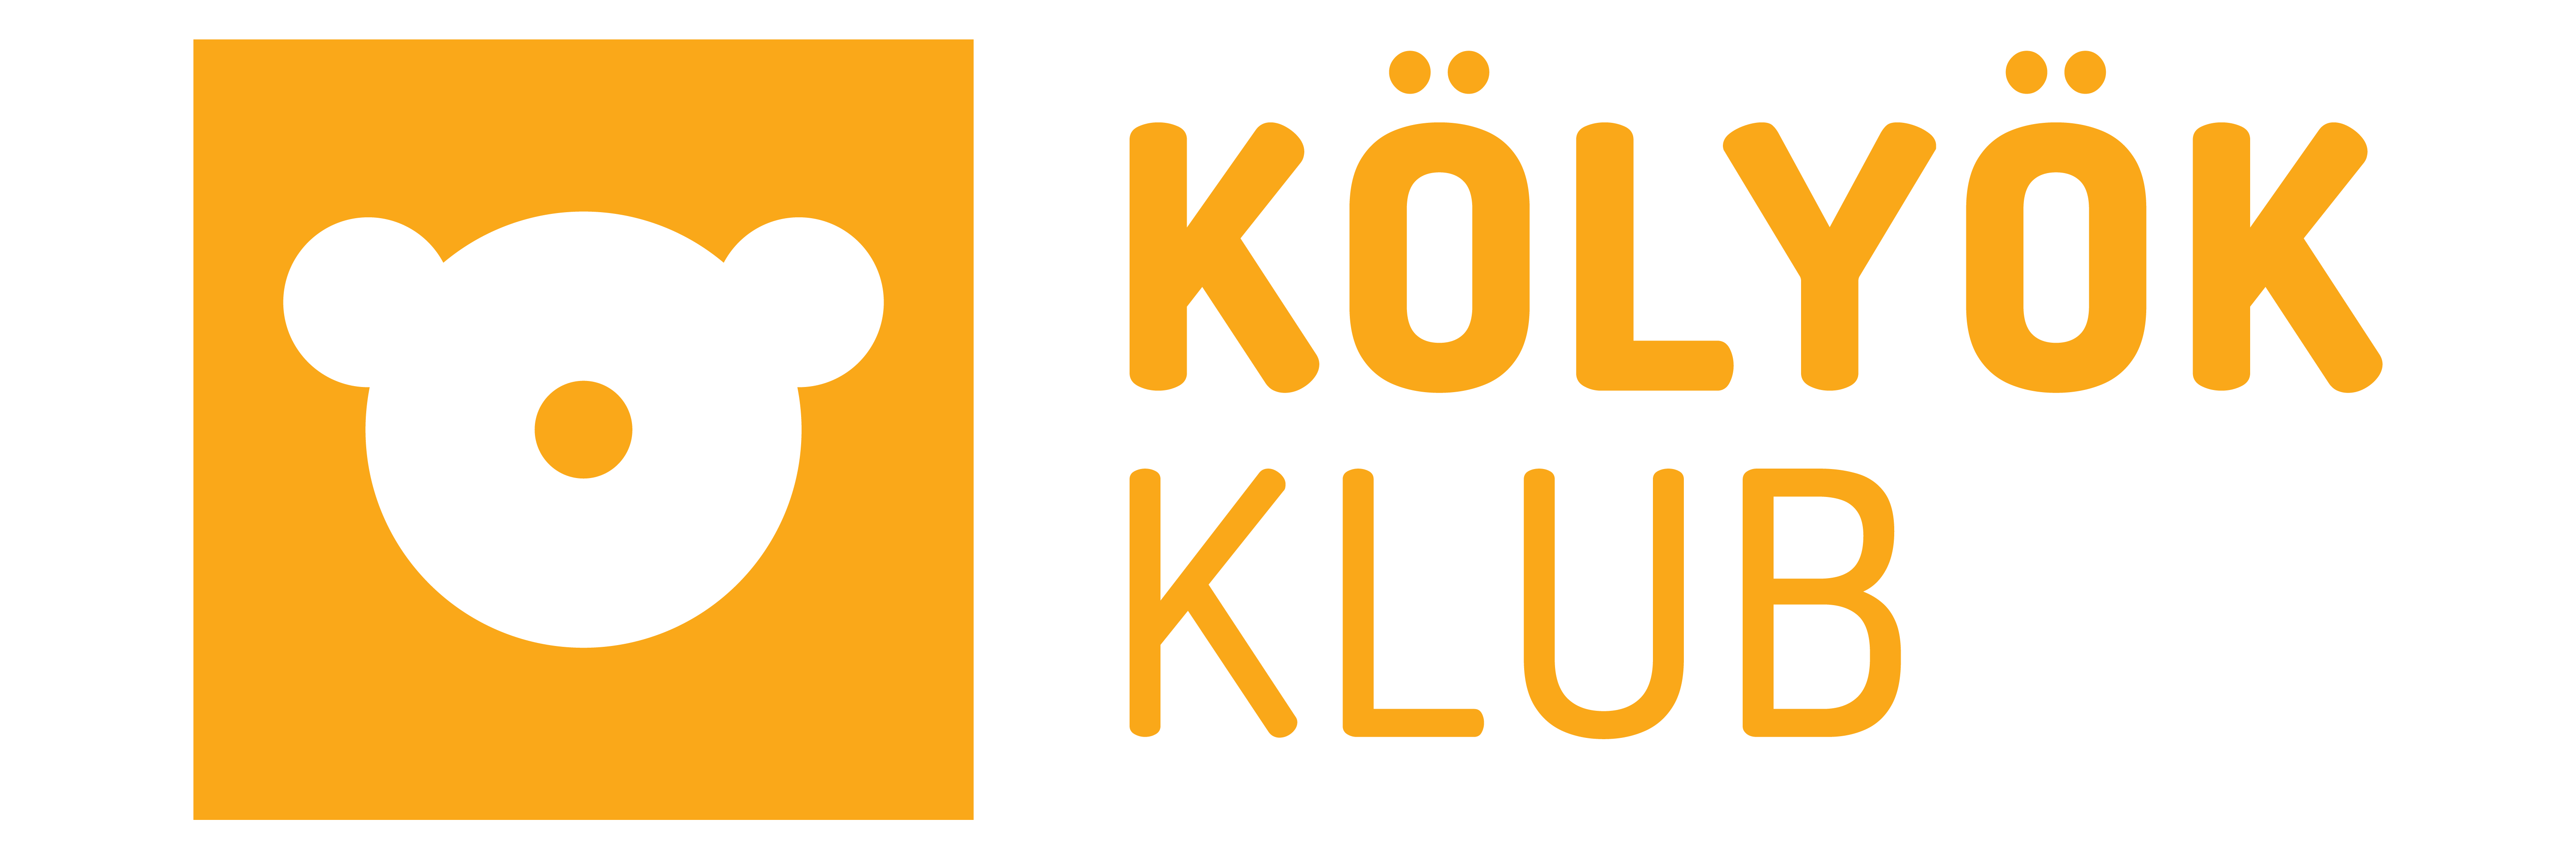 kolyokklub_logo_rgb.png